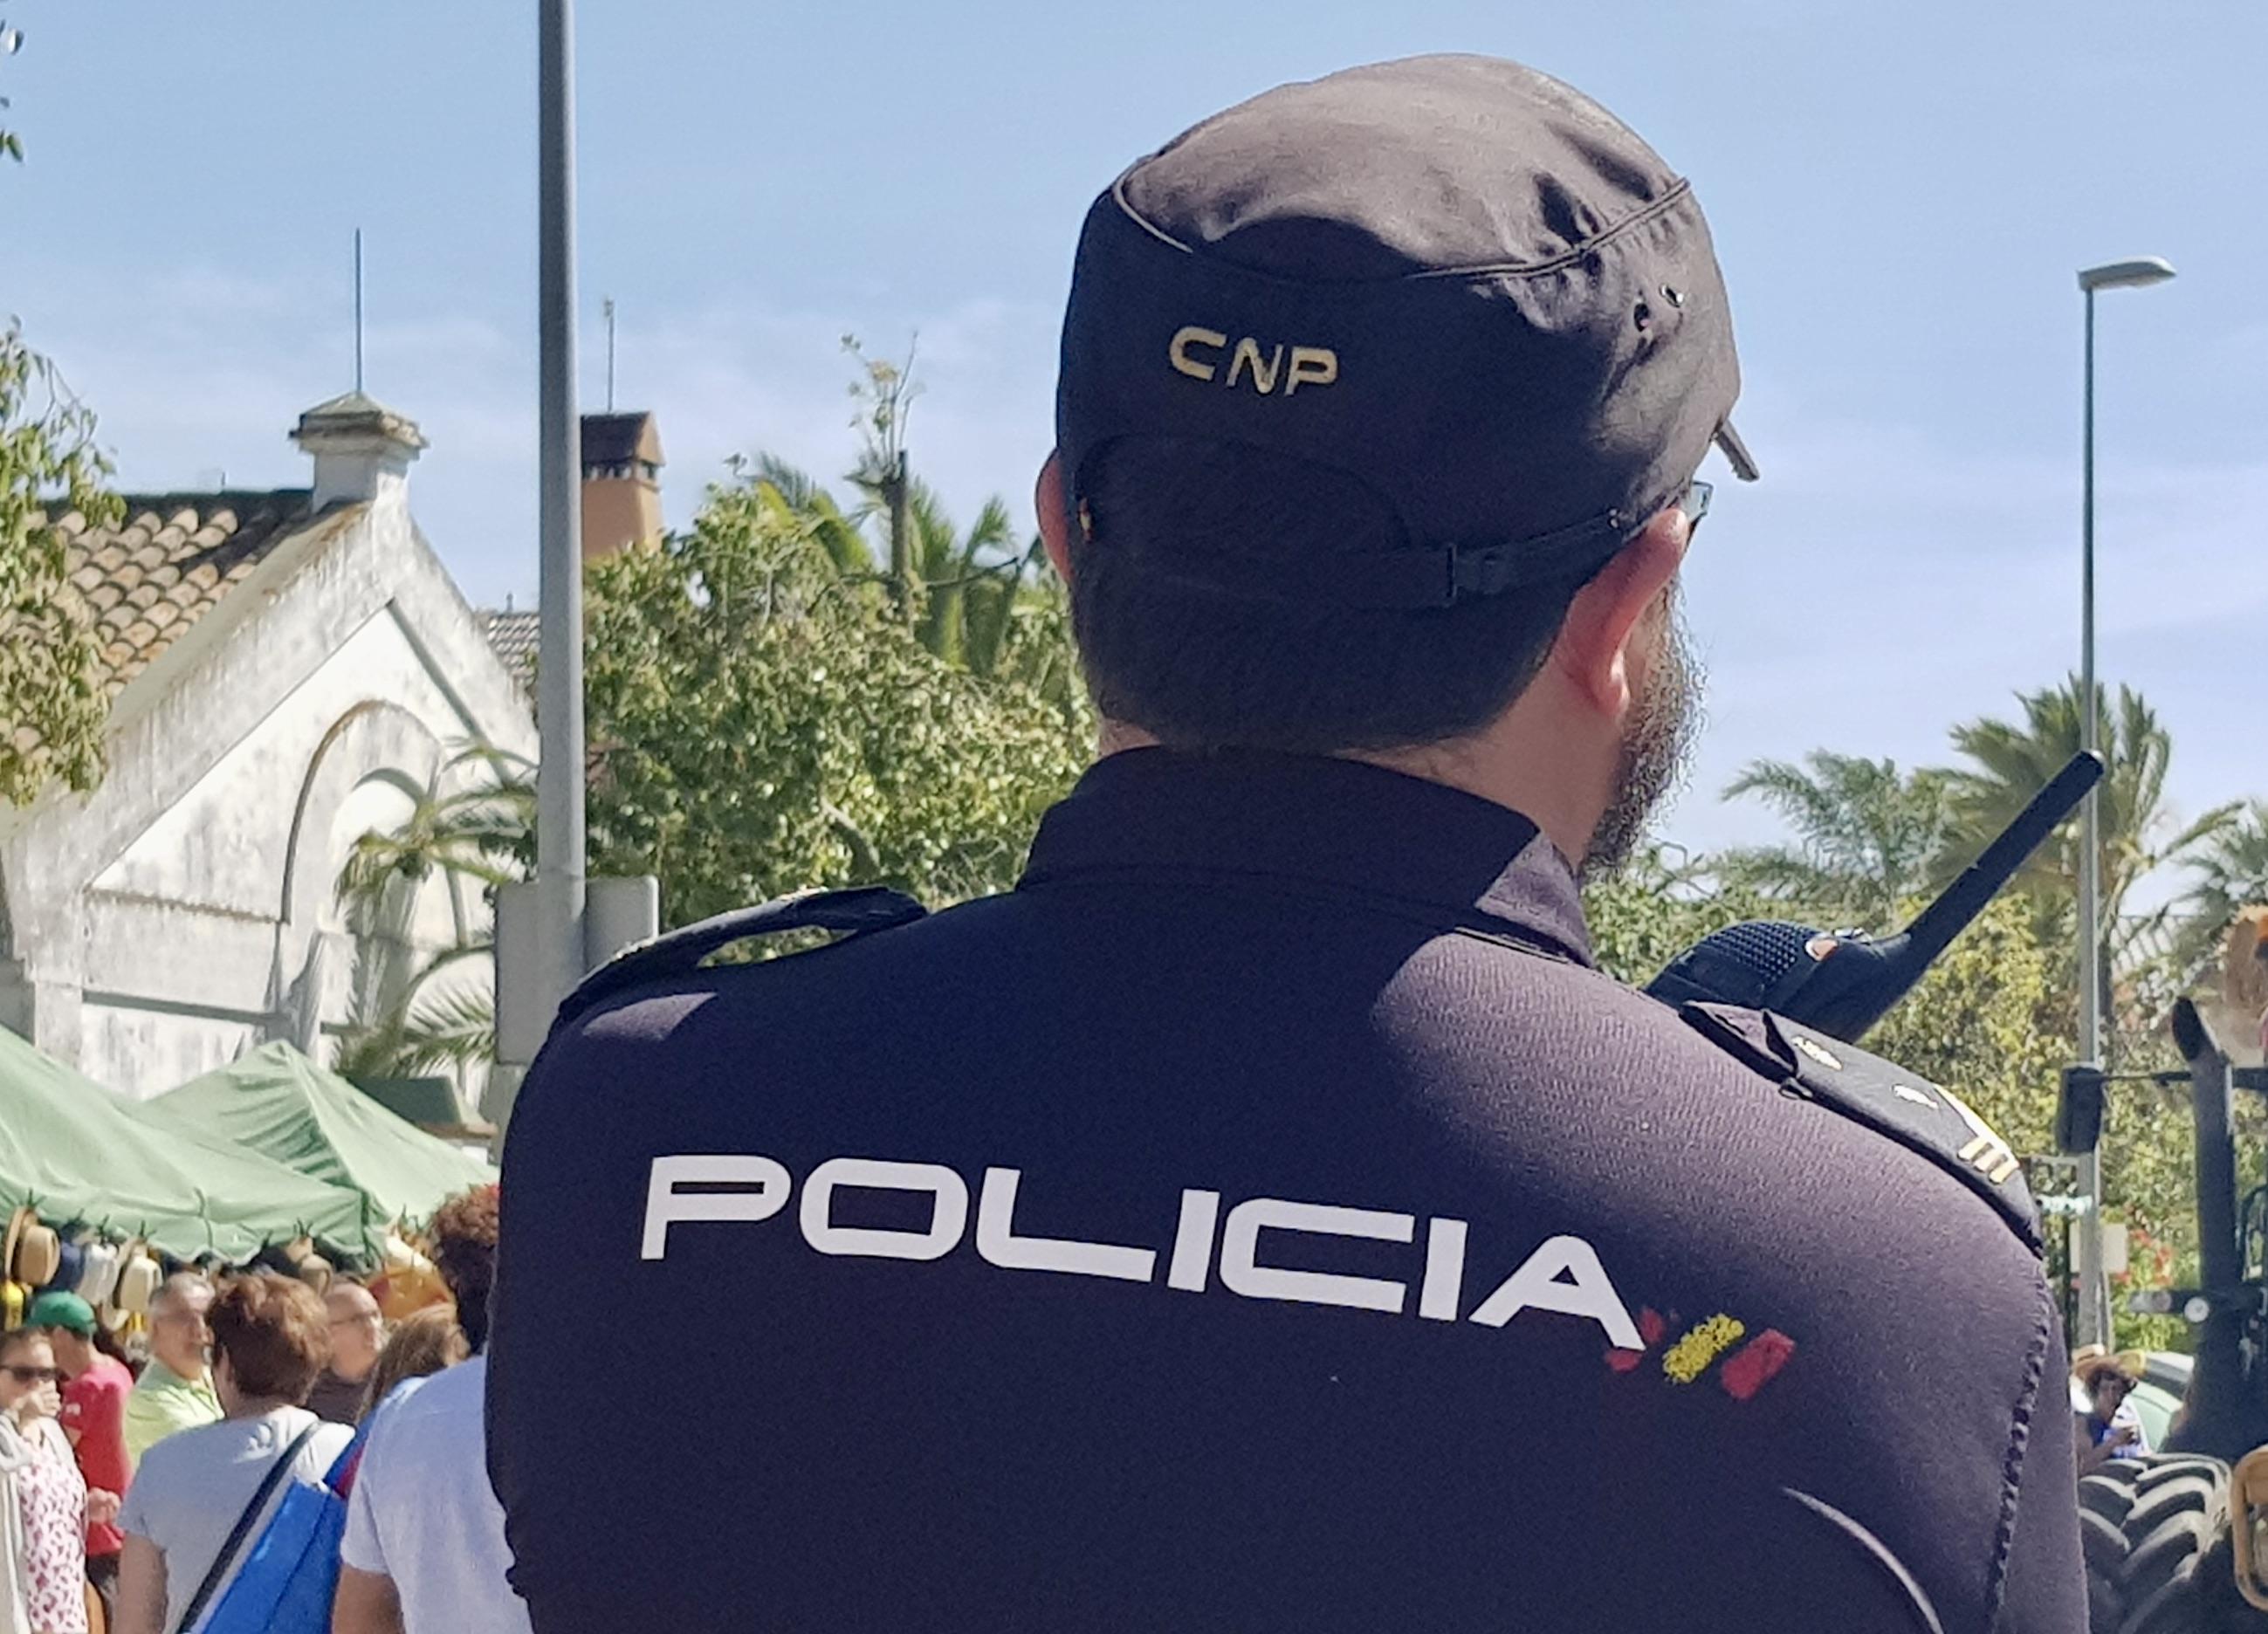 La Policía Nacional realiza en Jerez 28 detenciones a jóvenes, la mayoría magrebíes, por robos con violencia en los últimos seis meses